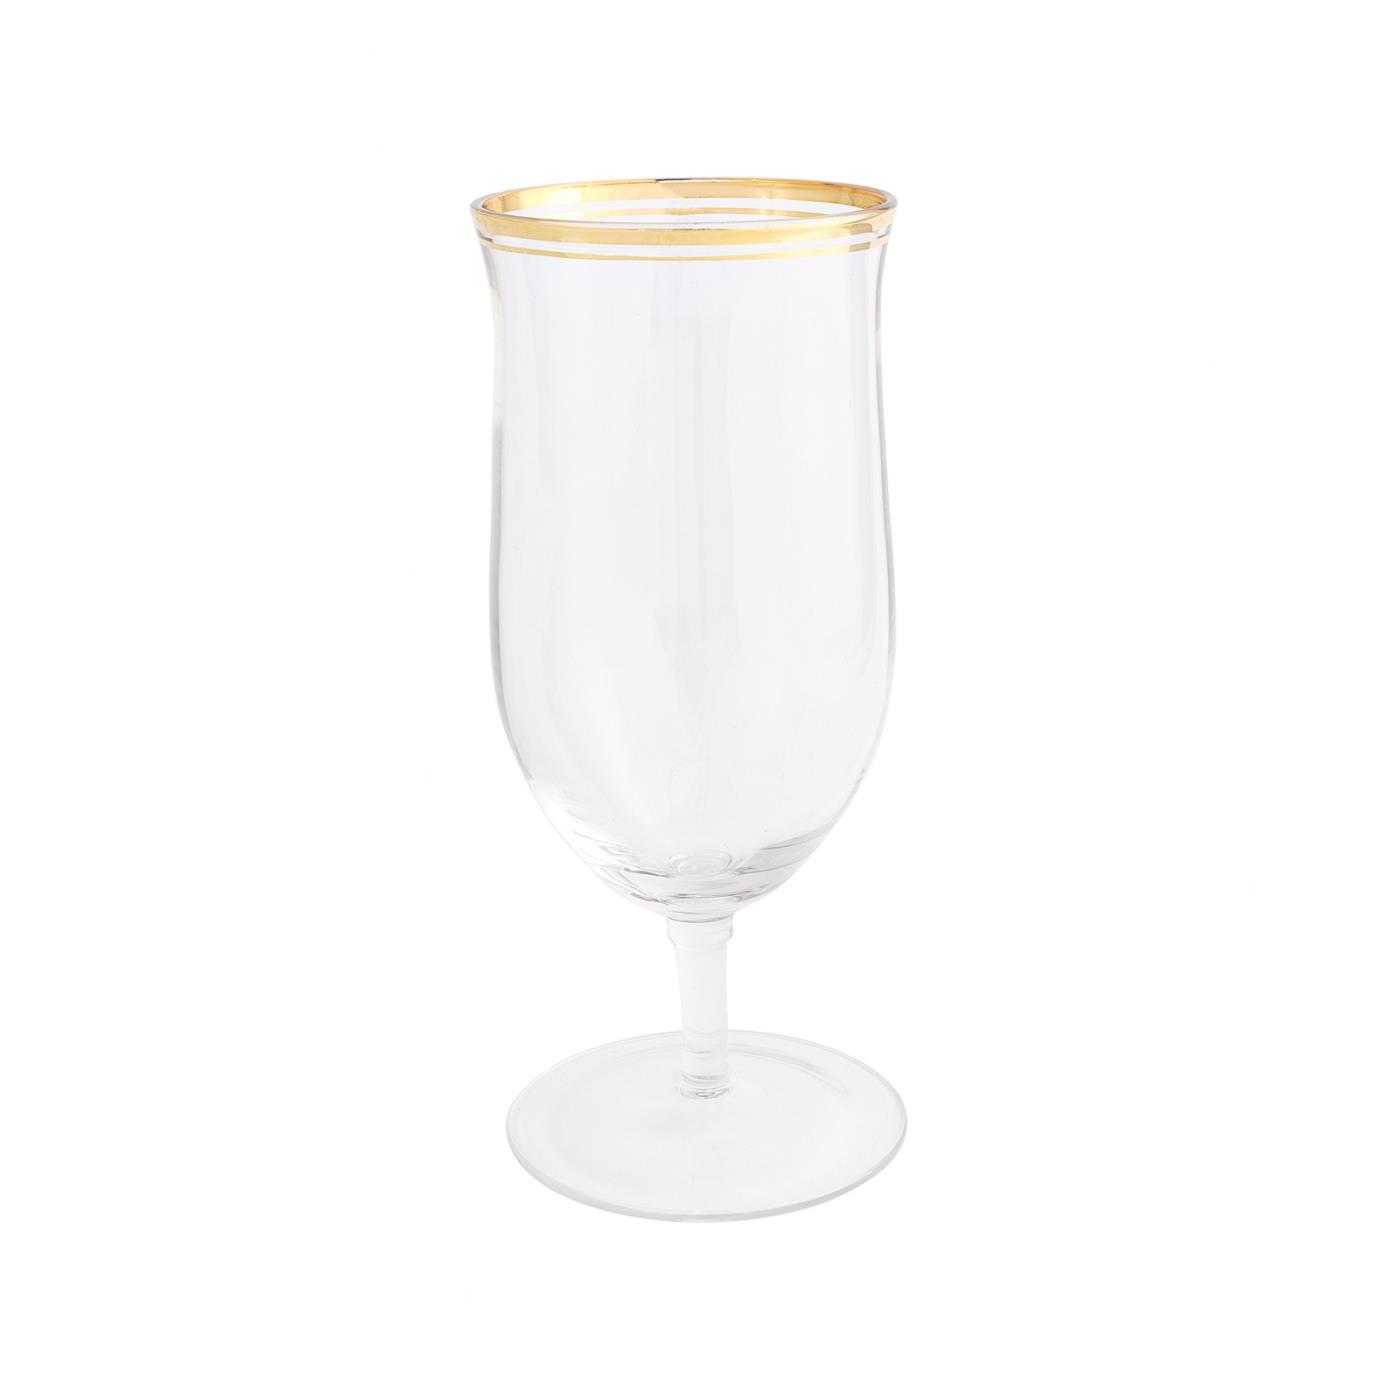 Windsor Gold - Water Goblet 16 oz